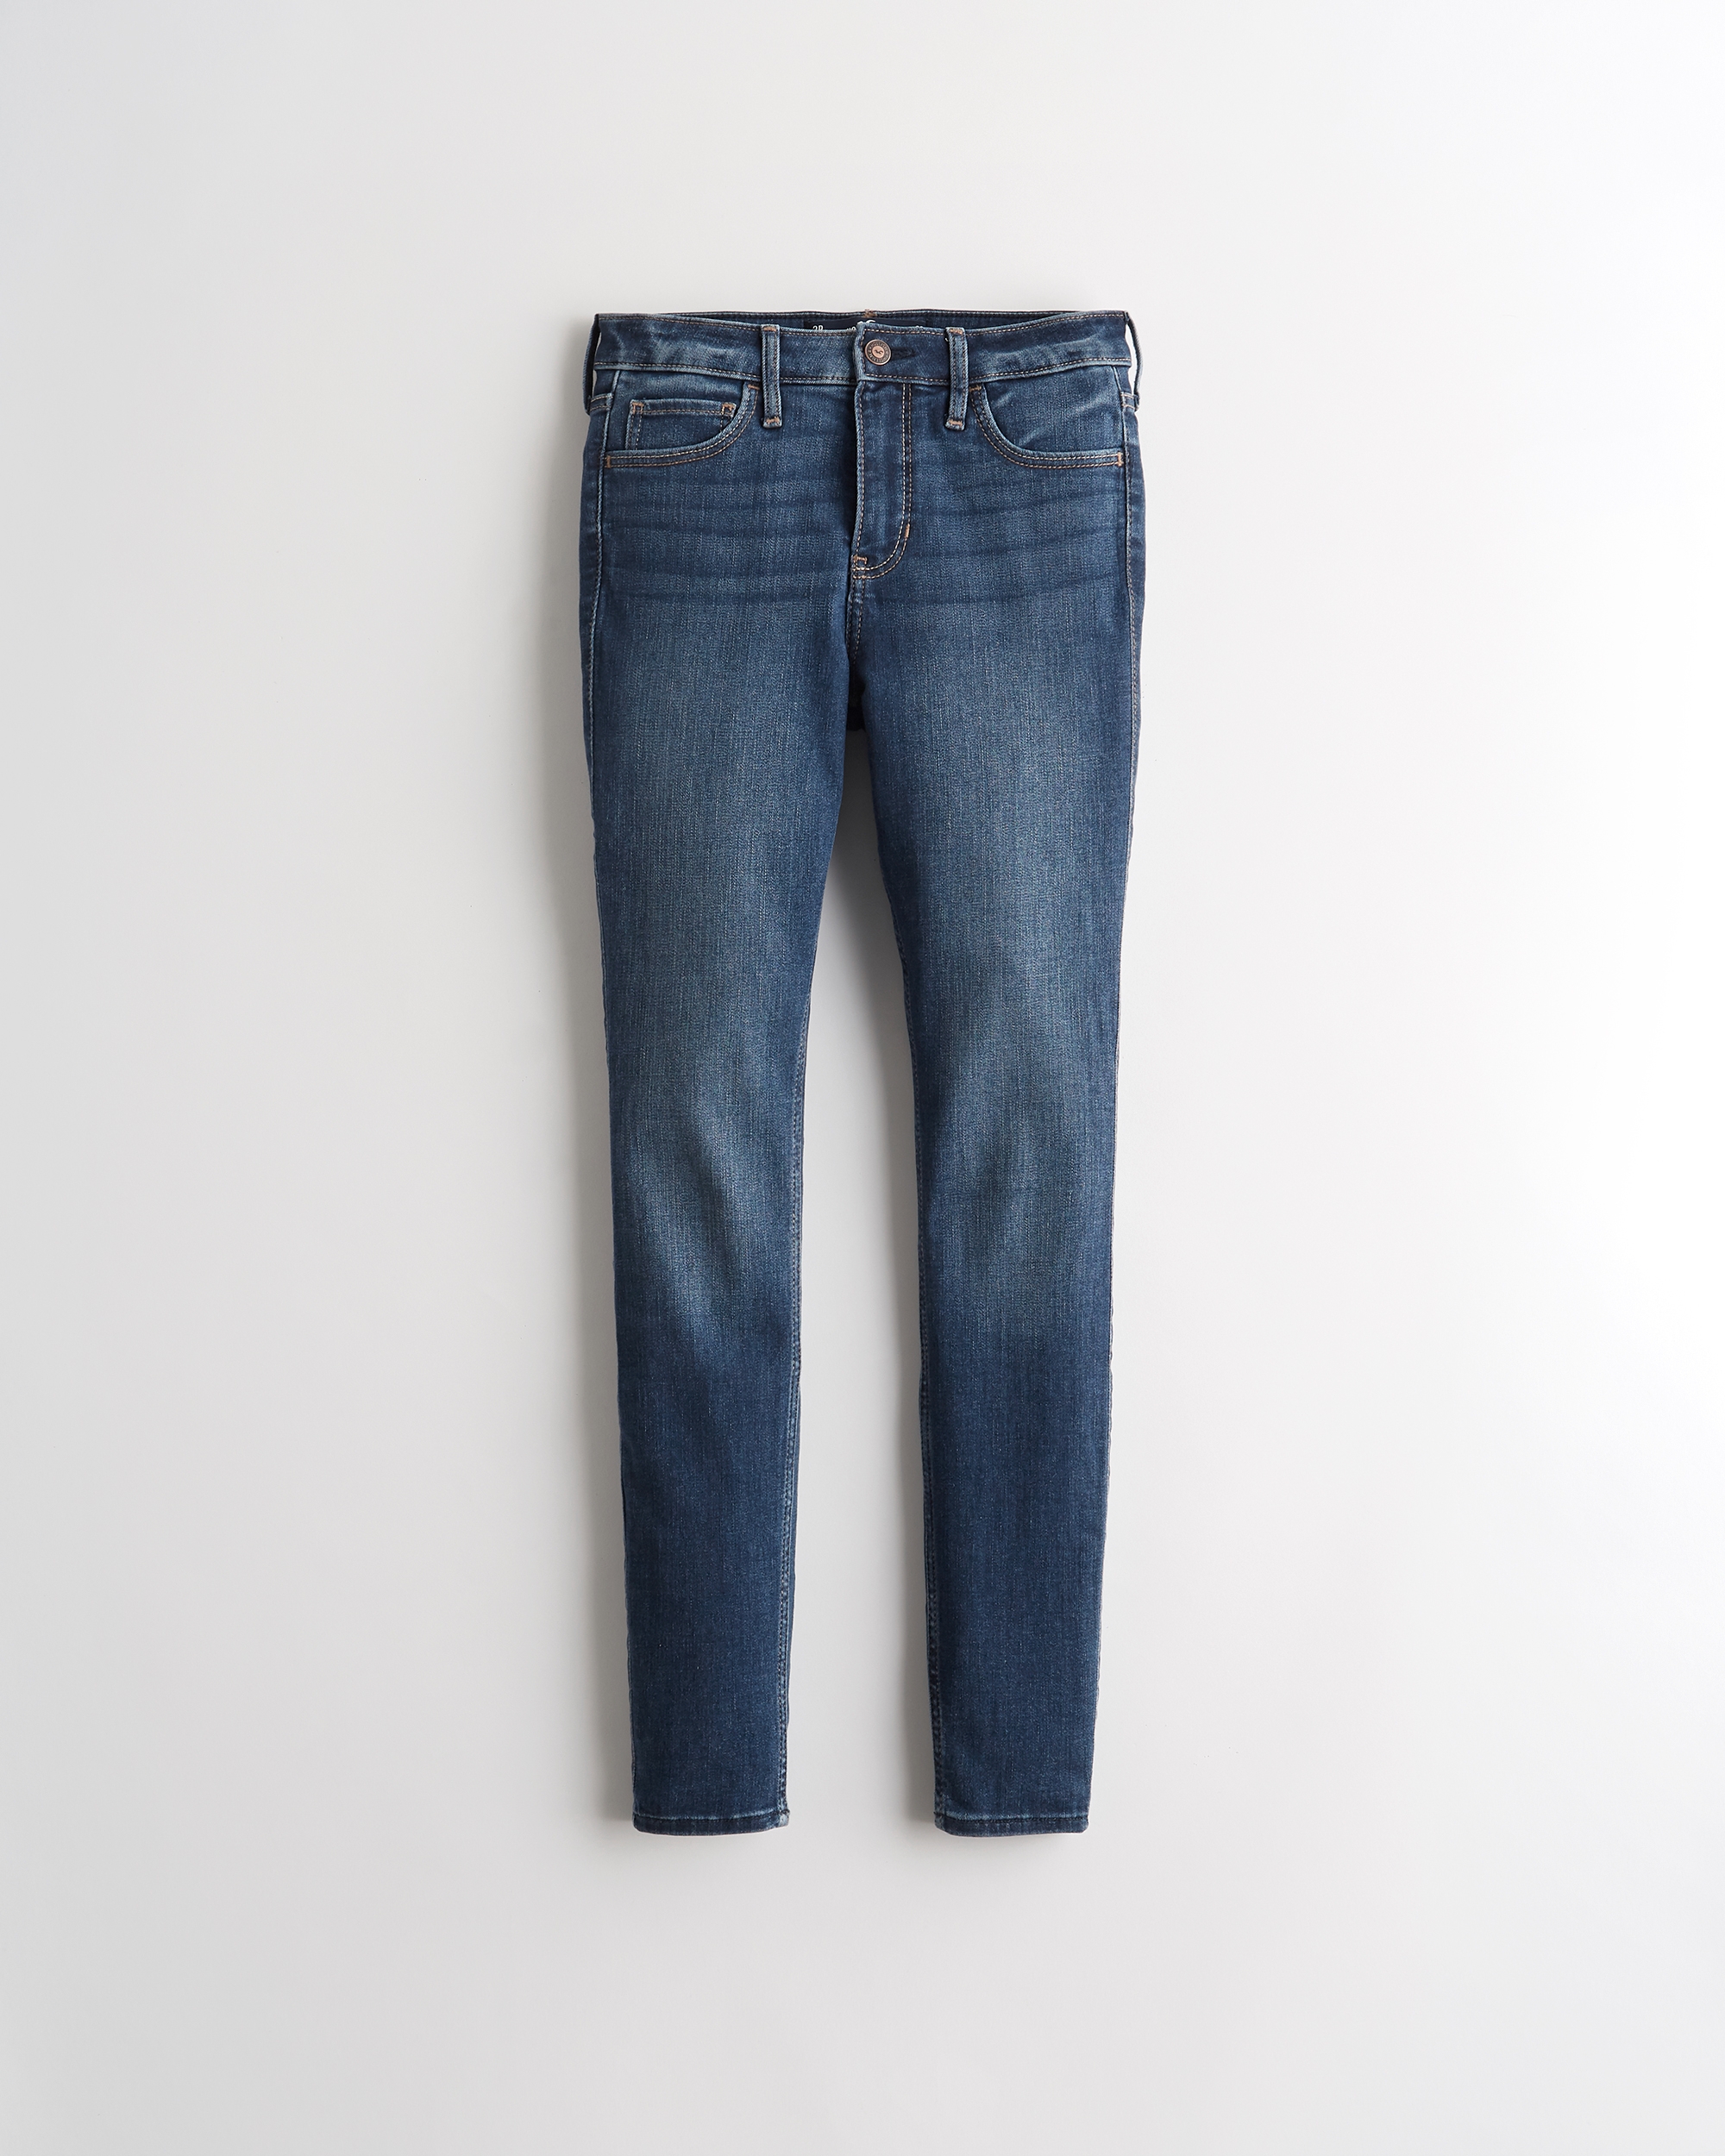 Jeans y jeggings de chicas | Hollister Co.